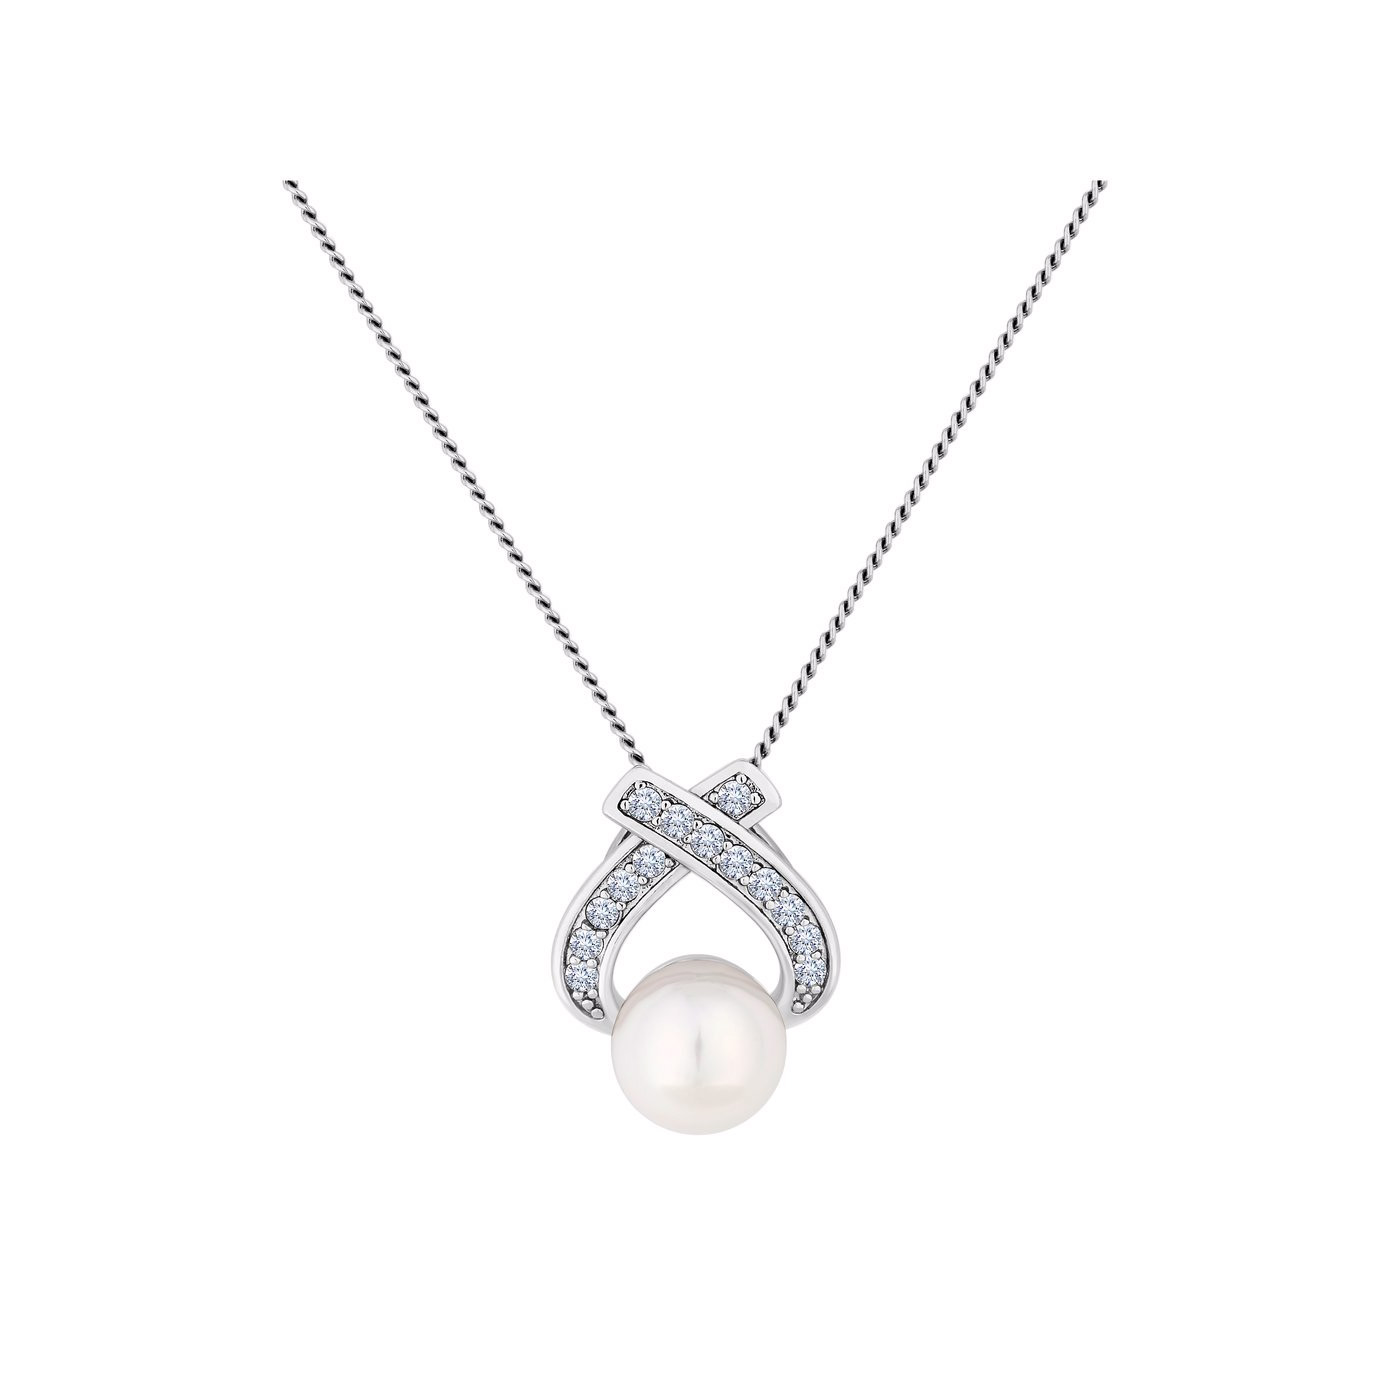 La joyería pendiente de la perla OEM/ODM modifica al proveedor de joyería grabado en plata esterlina para requisitos particulares del oro